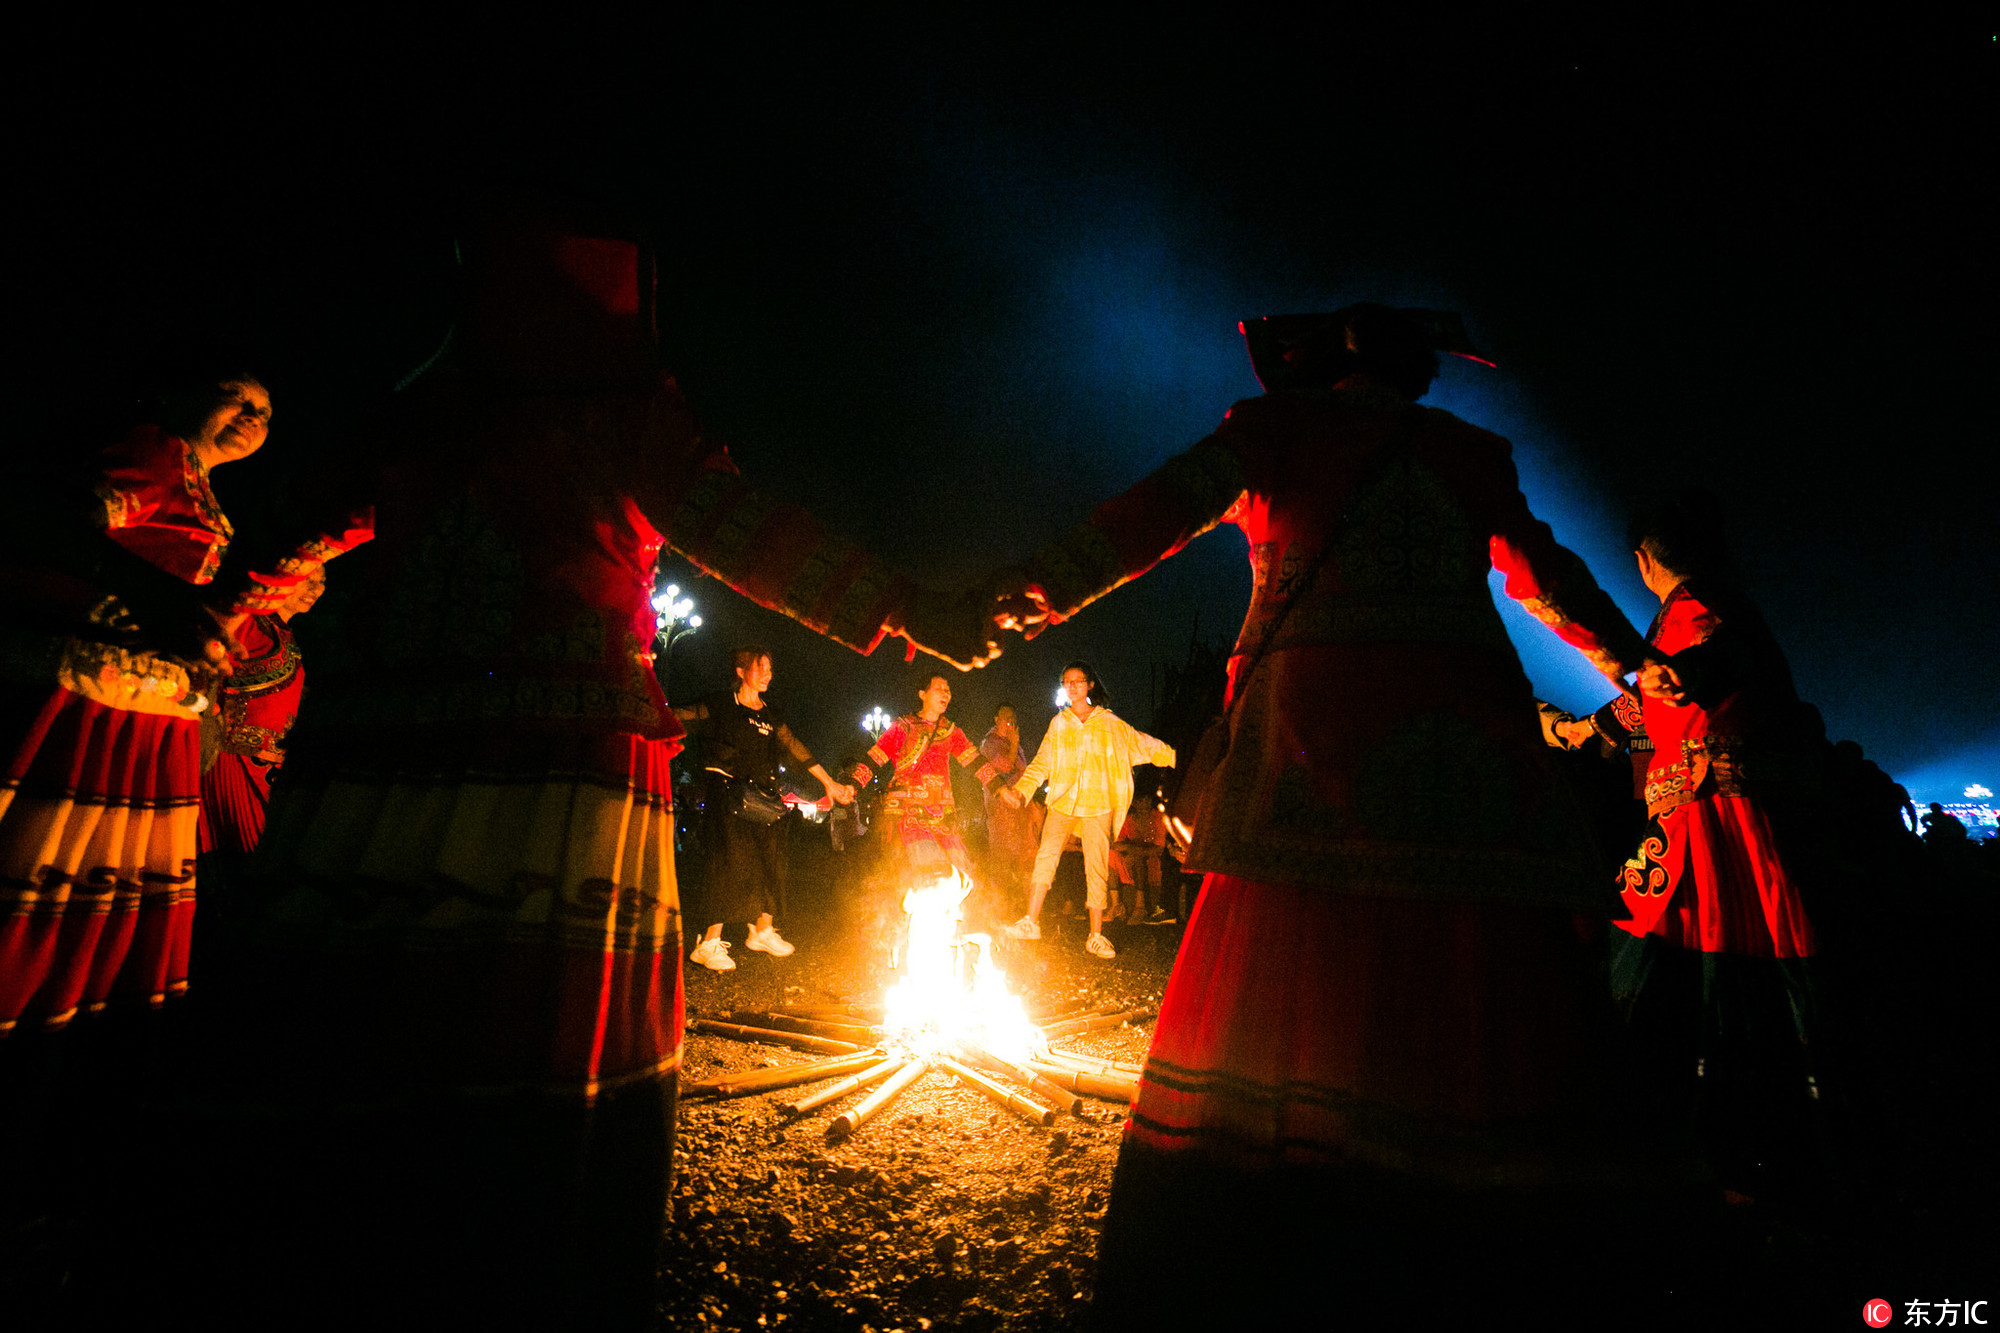 当日是彝族传统节日火把节,上万名彝族和其他民族同胞汇聚到贵州省